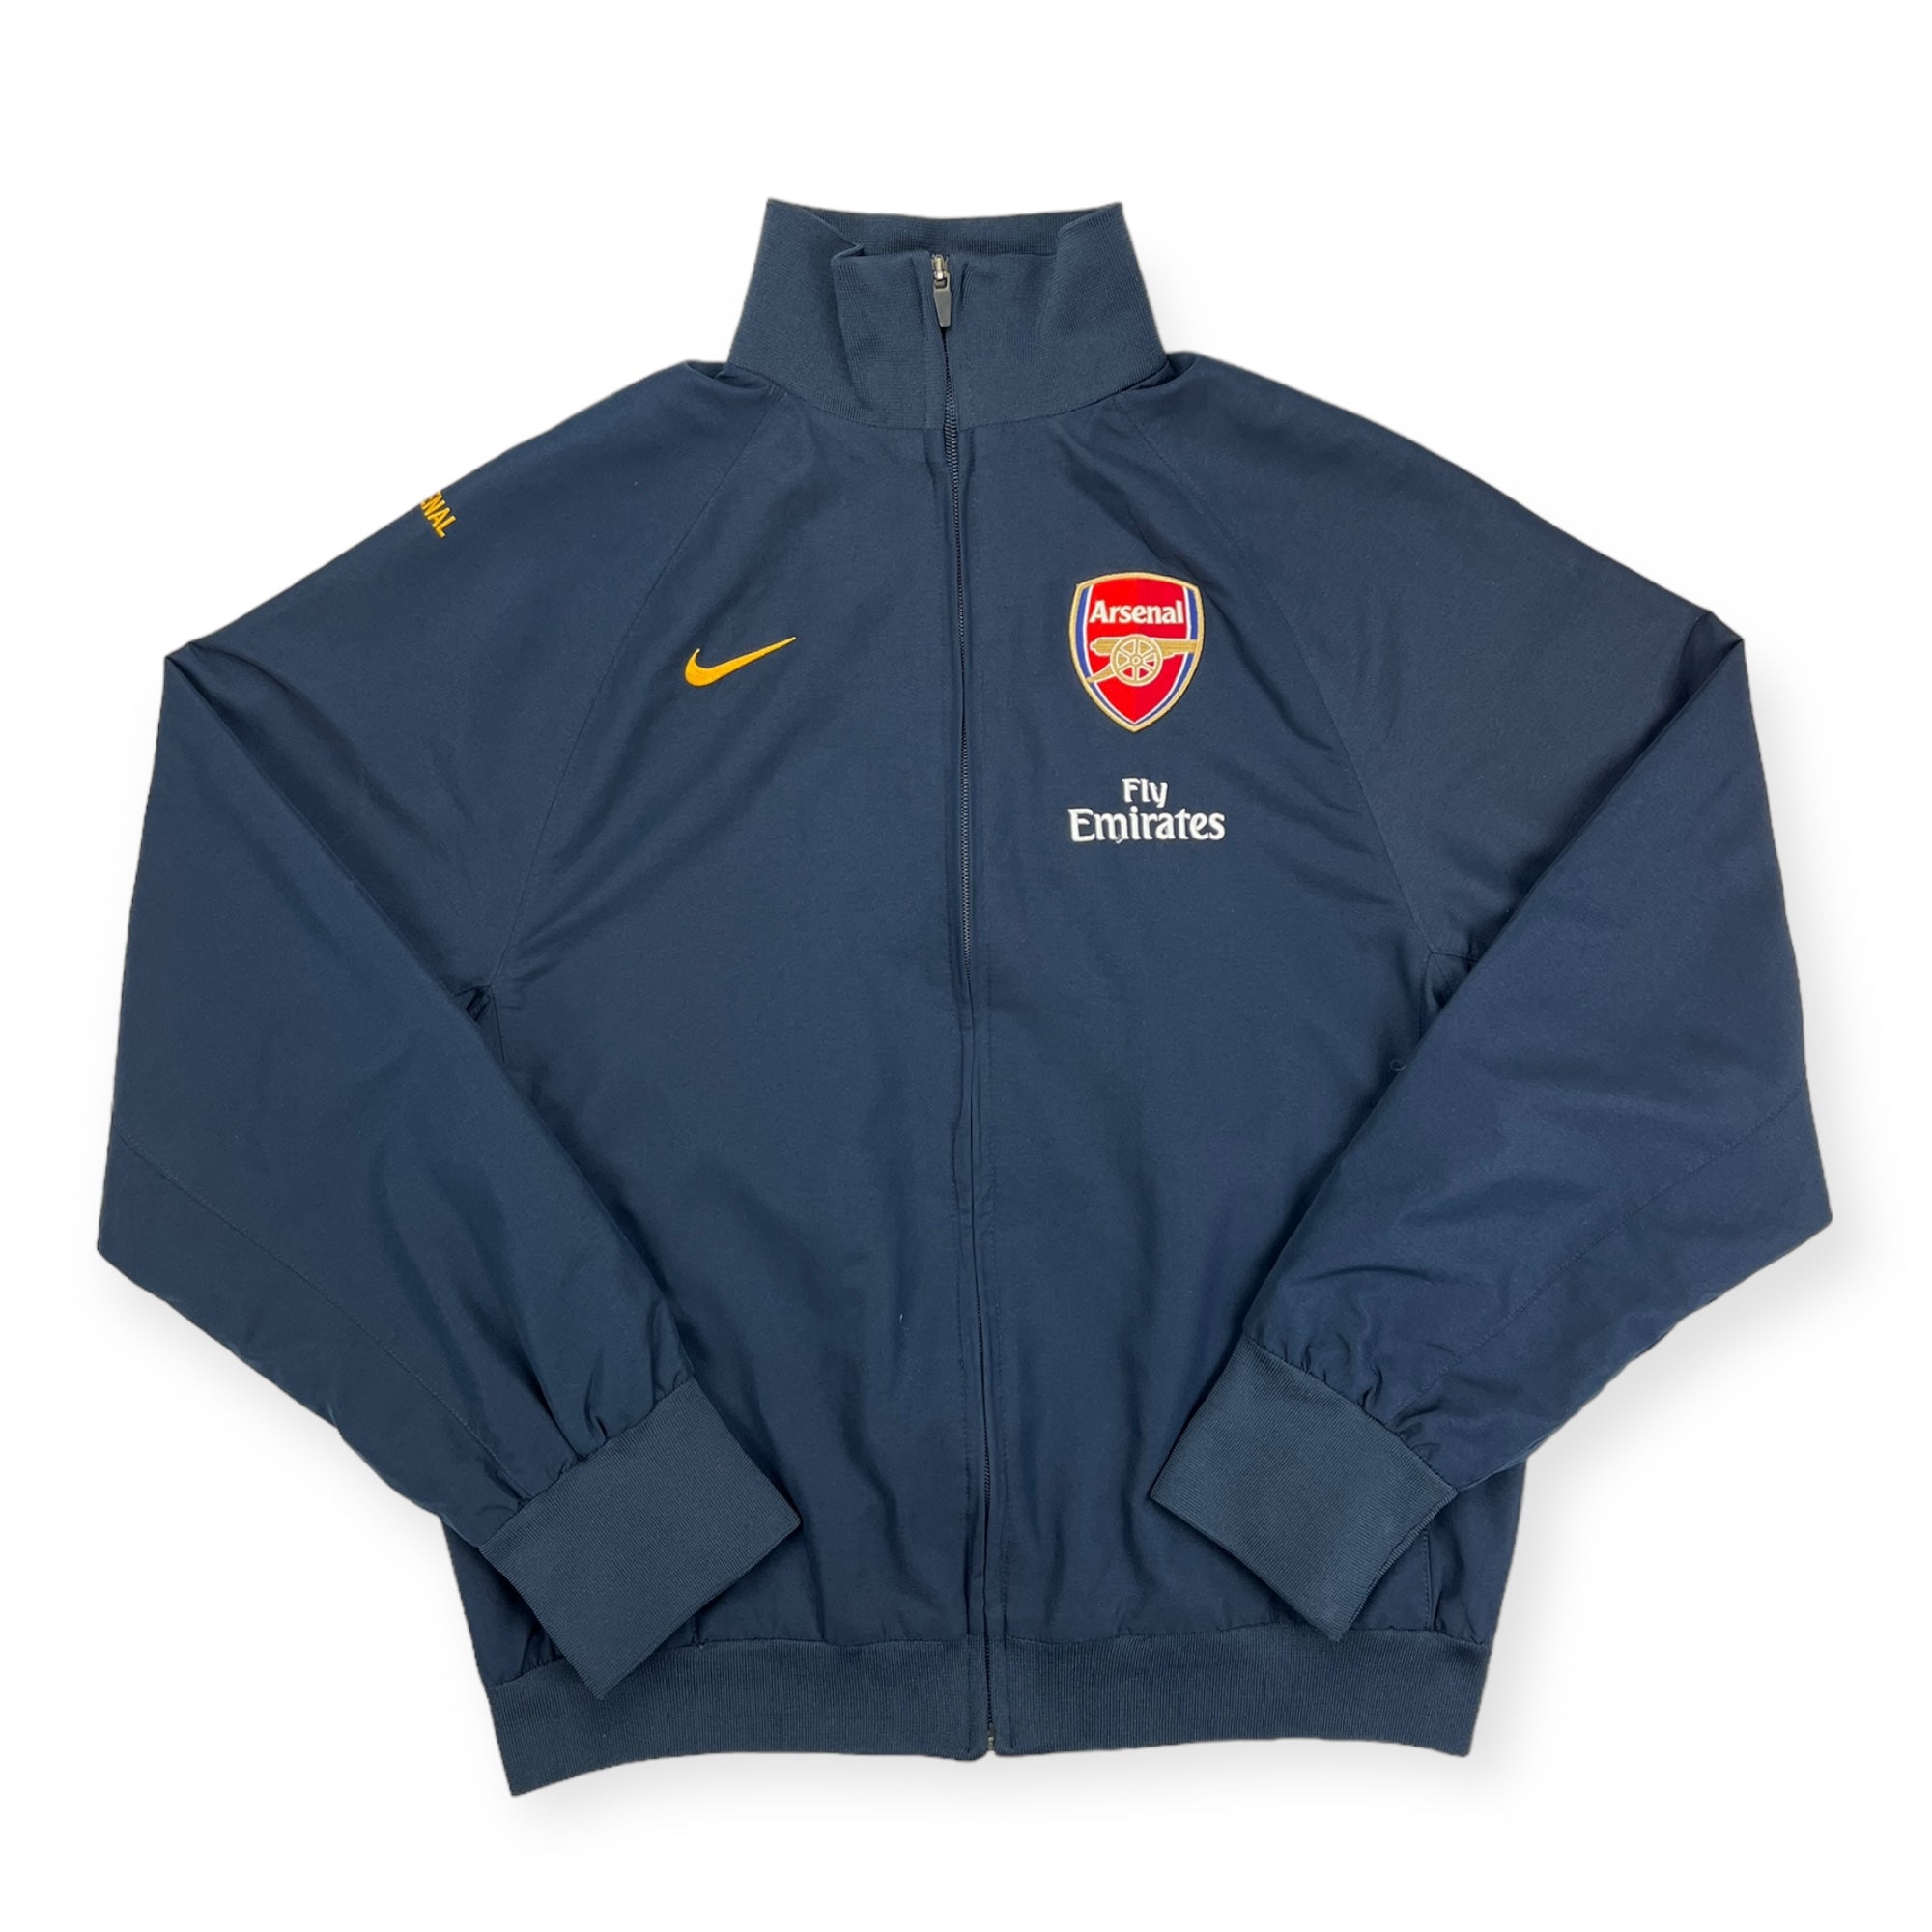 Arsenal 2008 Tracksuit Jacket